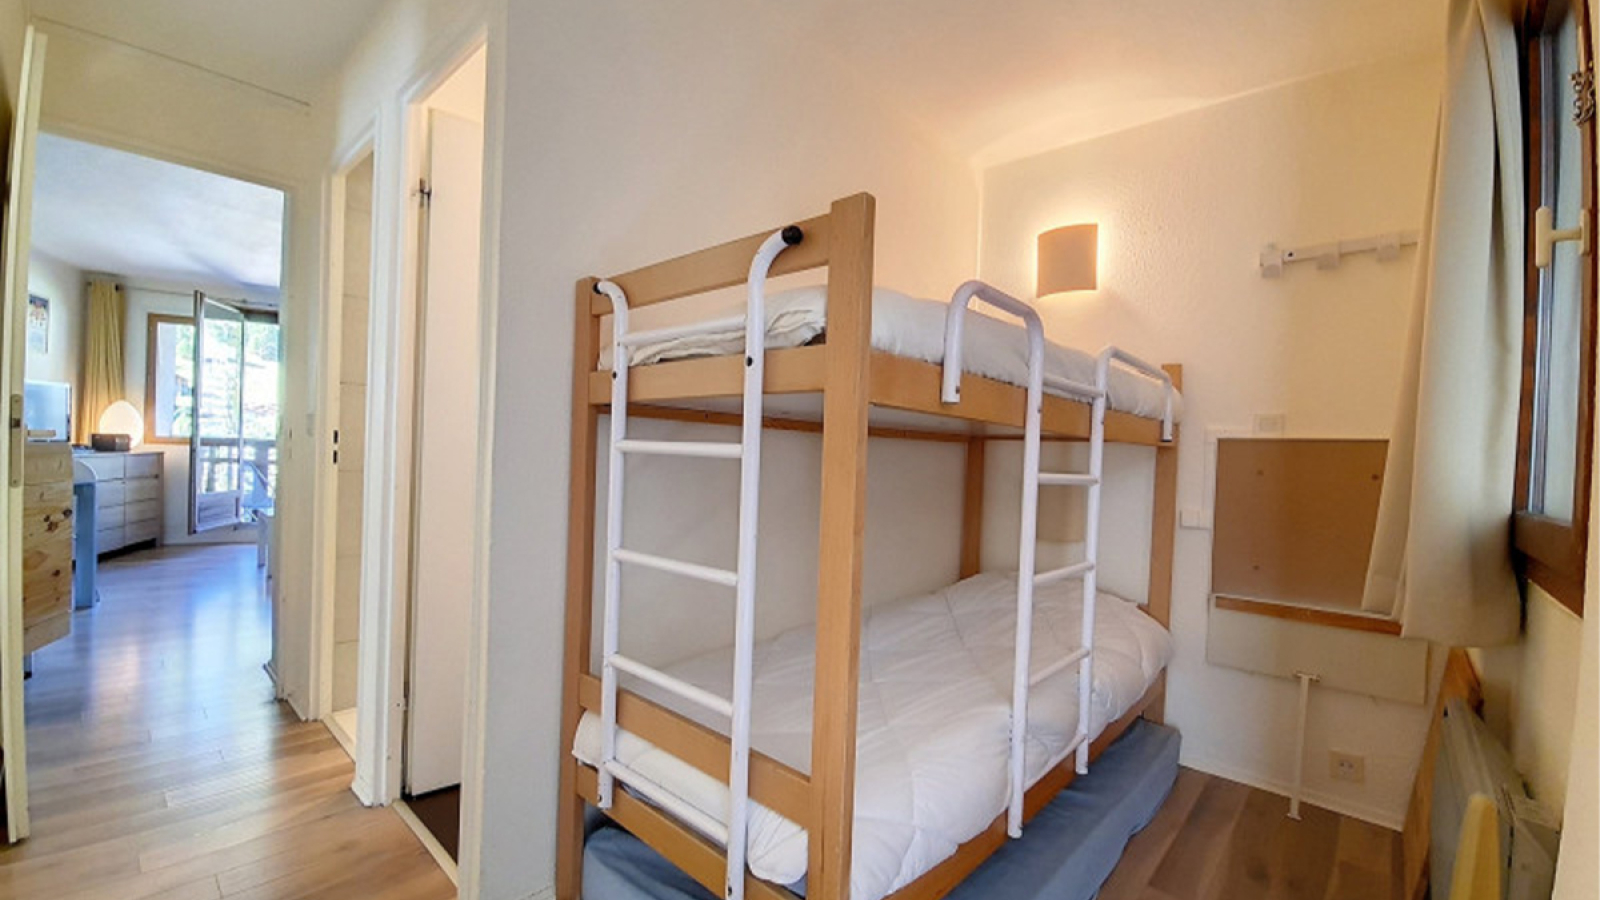 Chambre avec lit superposé - Appartement Pierre et Vacances La Daille